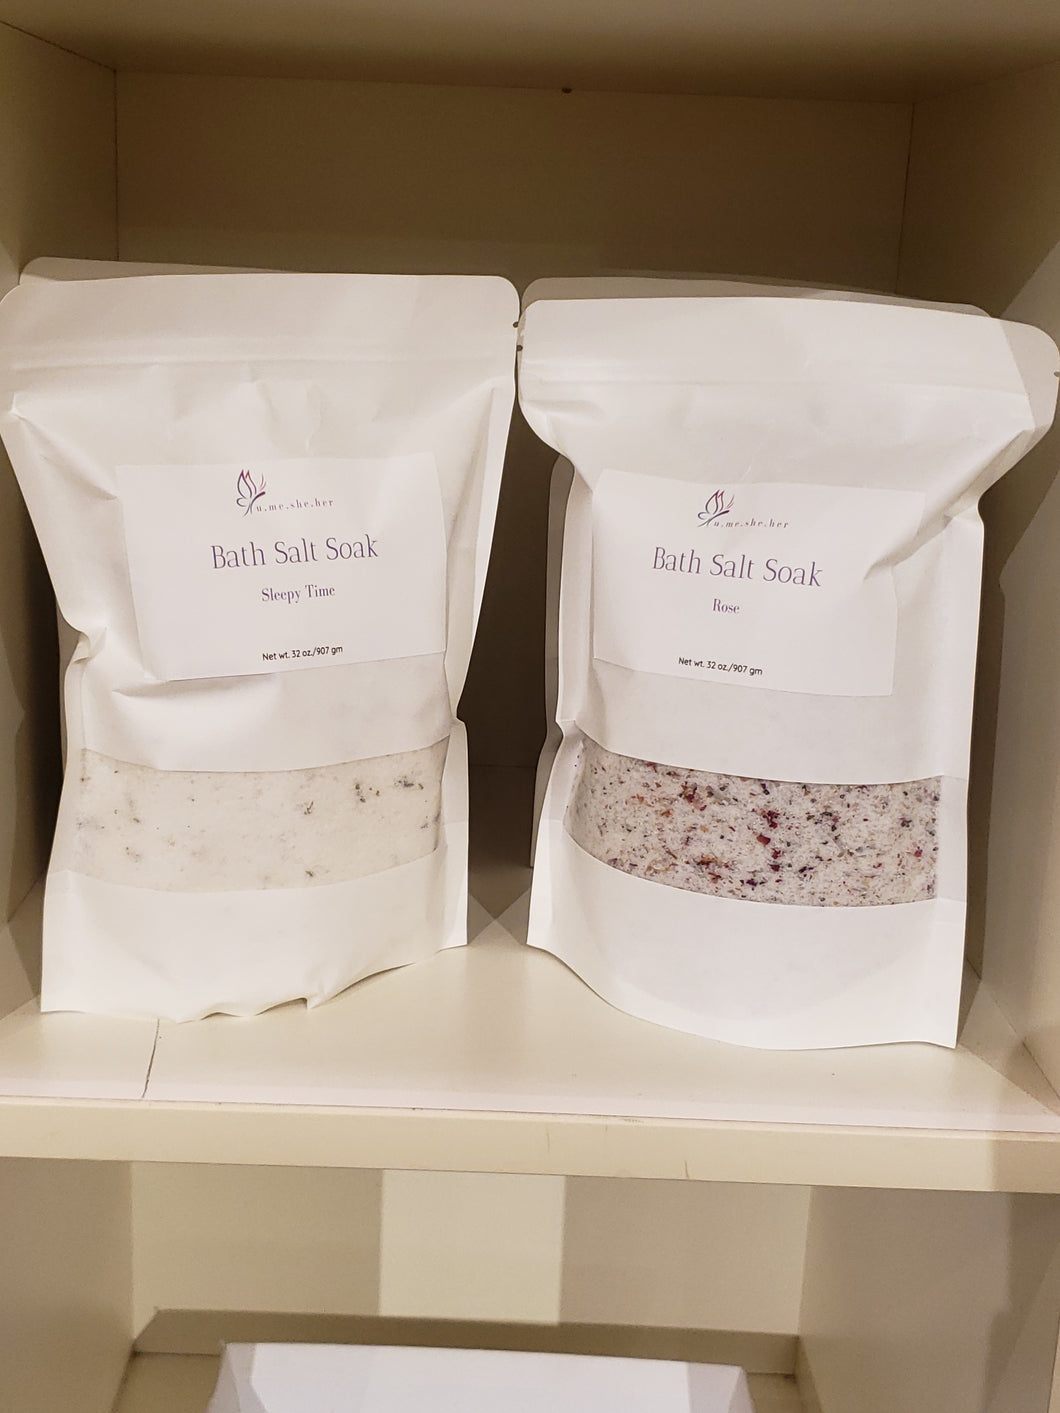 Essential oil infused Bath Salt Soak Kits